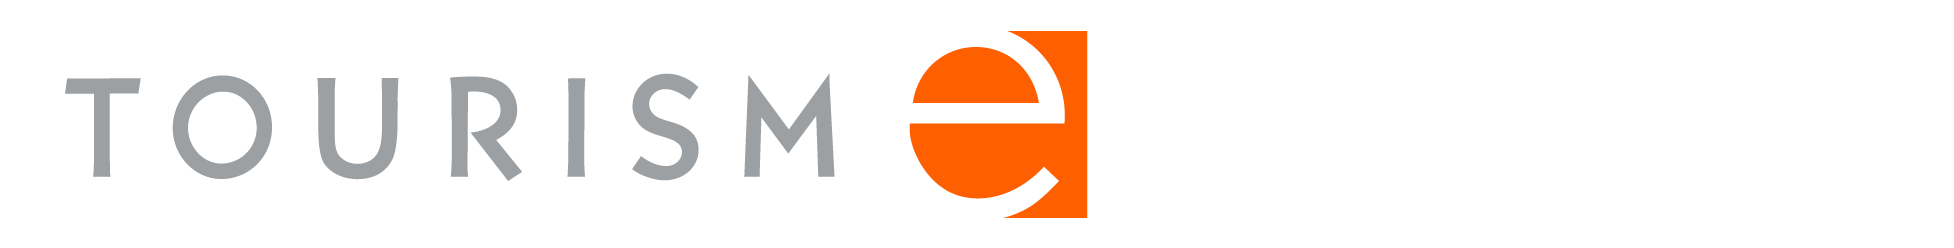 Tourism ESchool logo